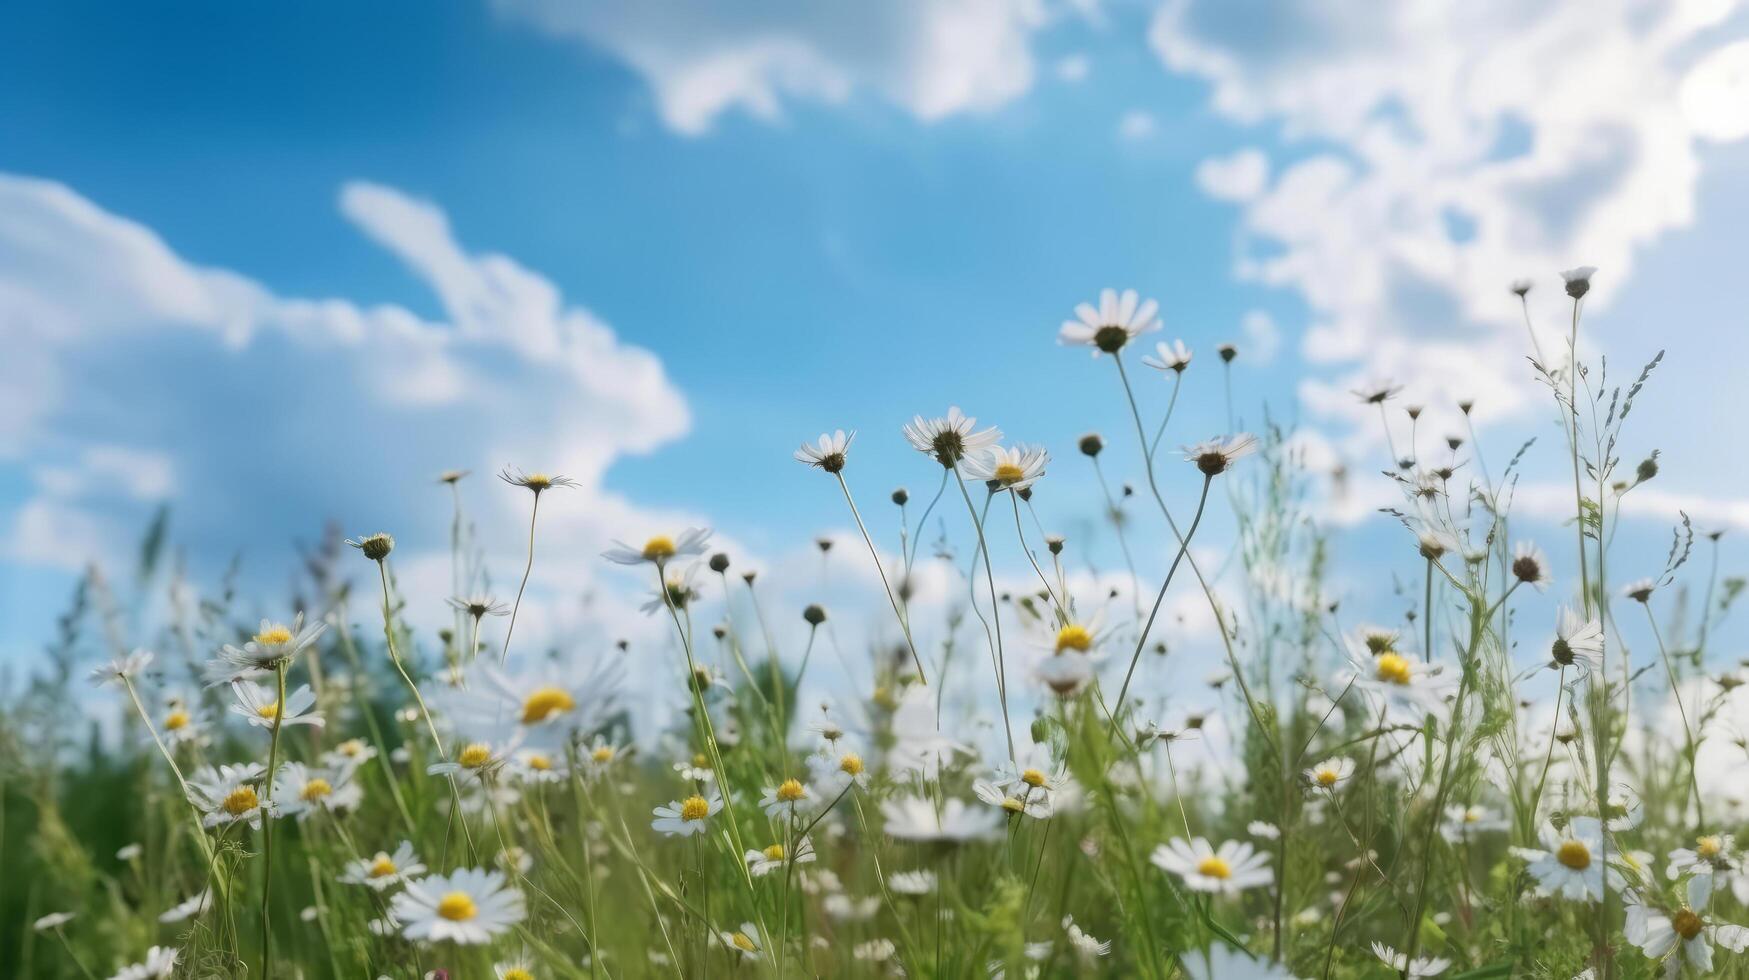 verão campo com margarida flores ilustração ai generativo foto